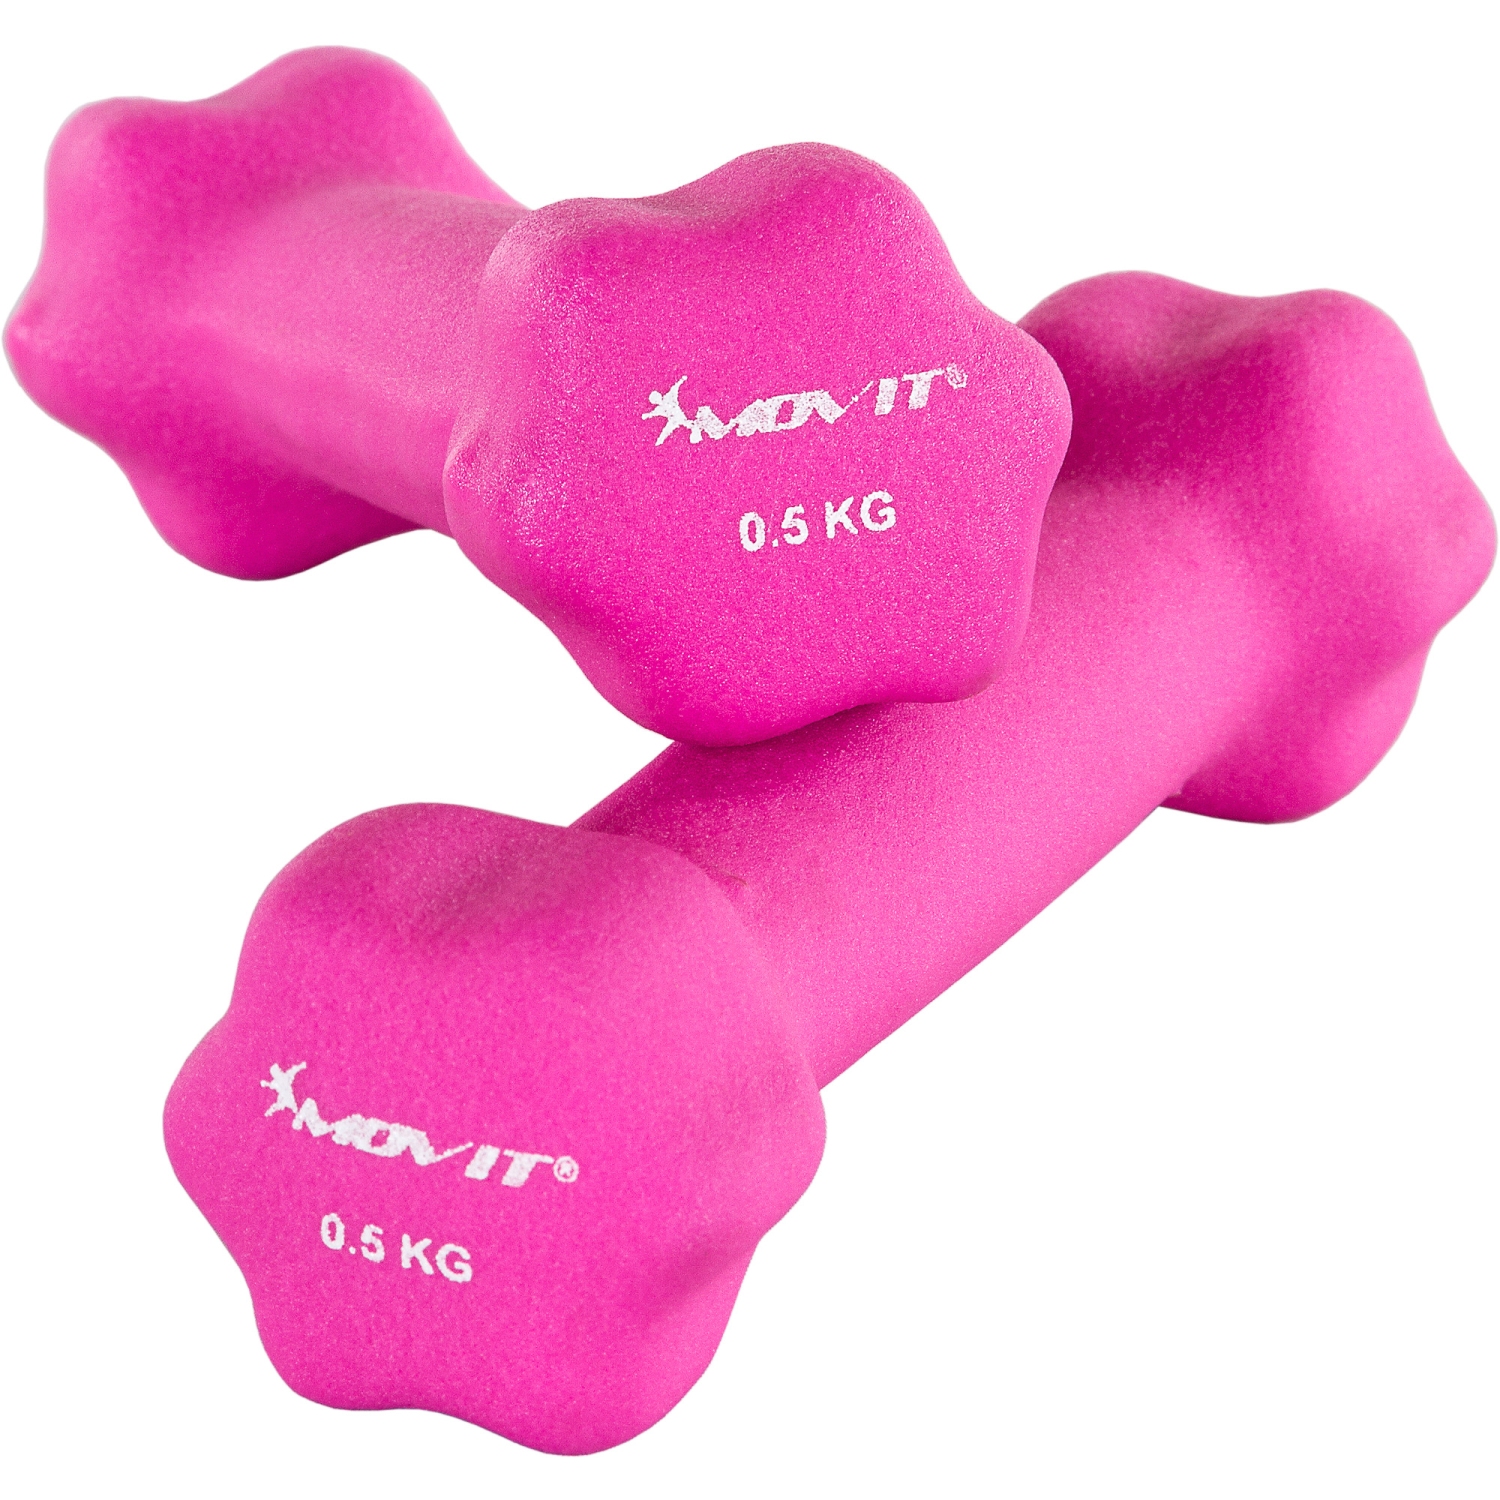 Dumbells set – Gewichten – Fitness – 2x 0.5 kg – Roze